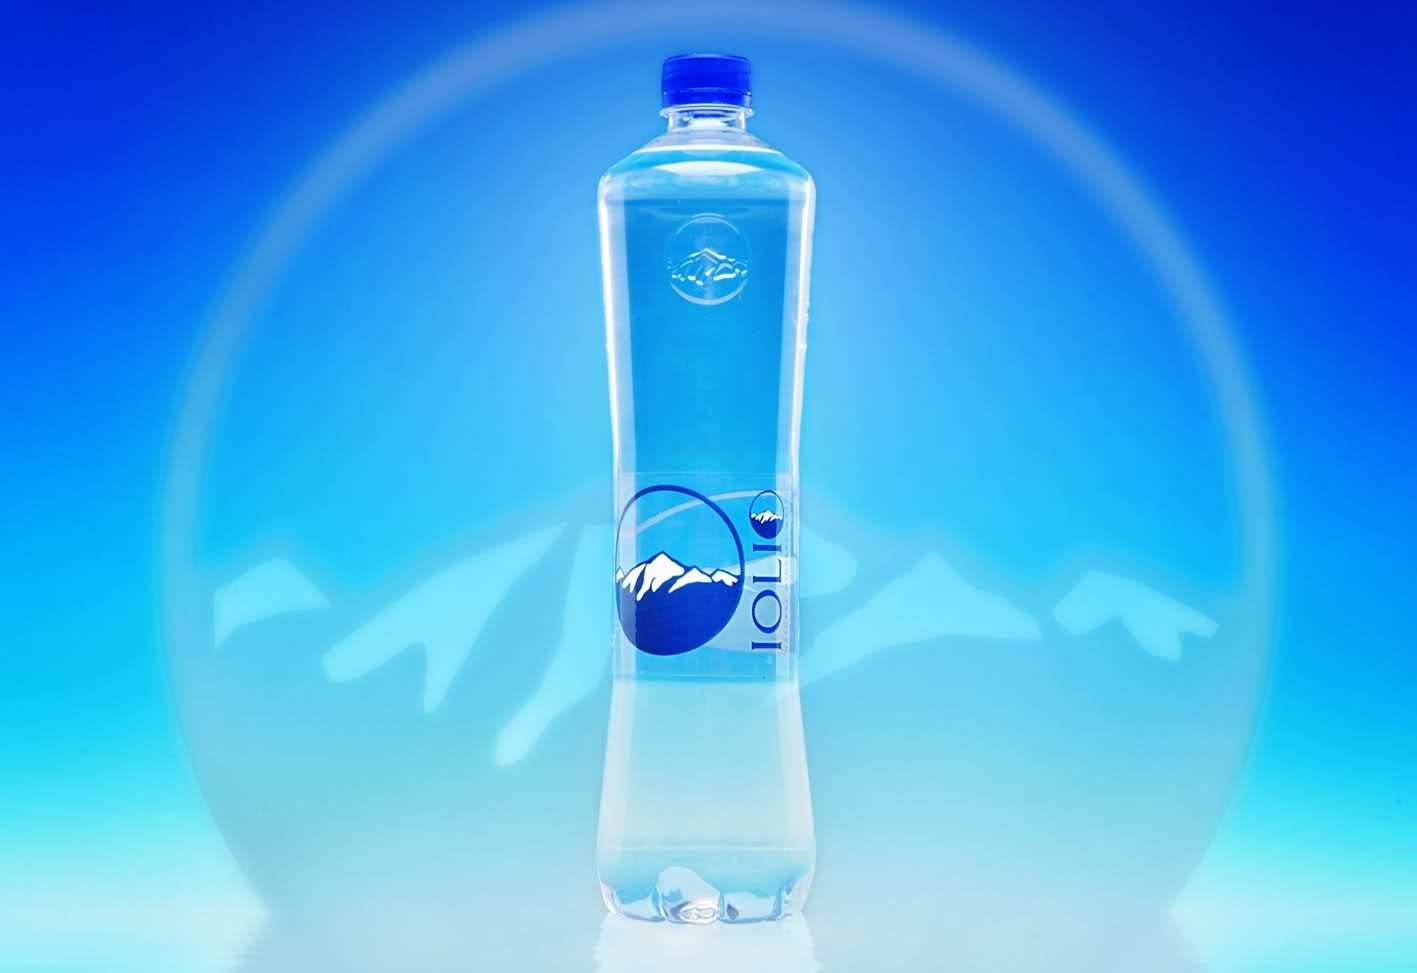 Спонсор воды. Питьевая вода. Логотип питьевой воды. Минеральные воды. Питьевая вода бренды.